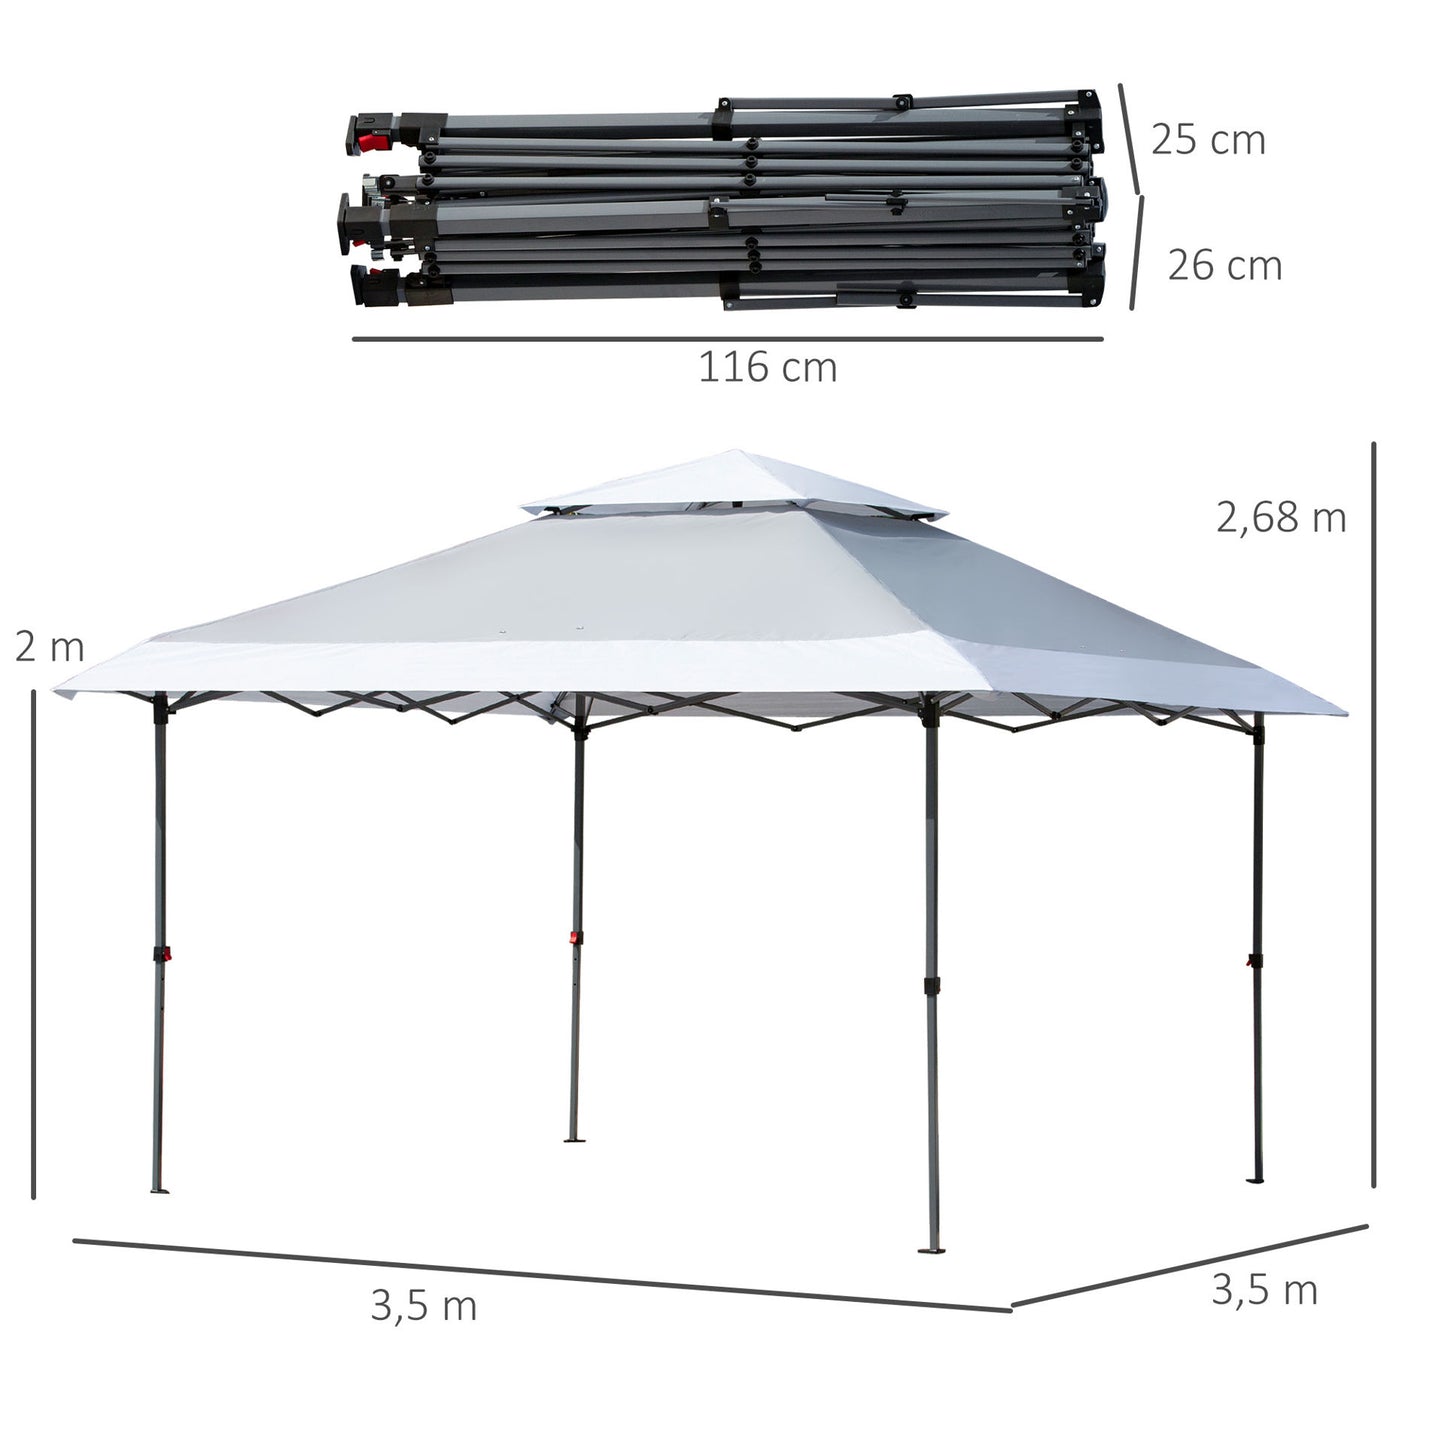 Nancy's Cove Point Folding Pavilion Pop-up Tent - Gray, White - Steel, Oxford Fabric - 1.37 cm x 1.37 cm x 1.05 cm